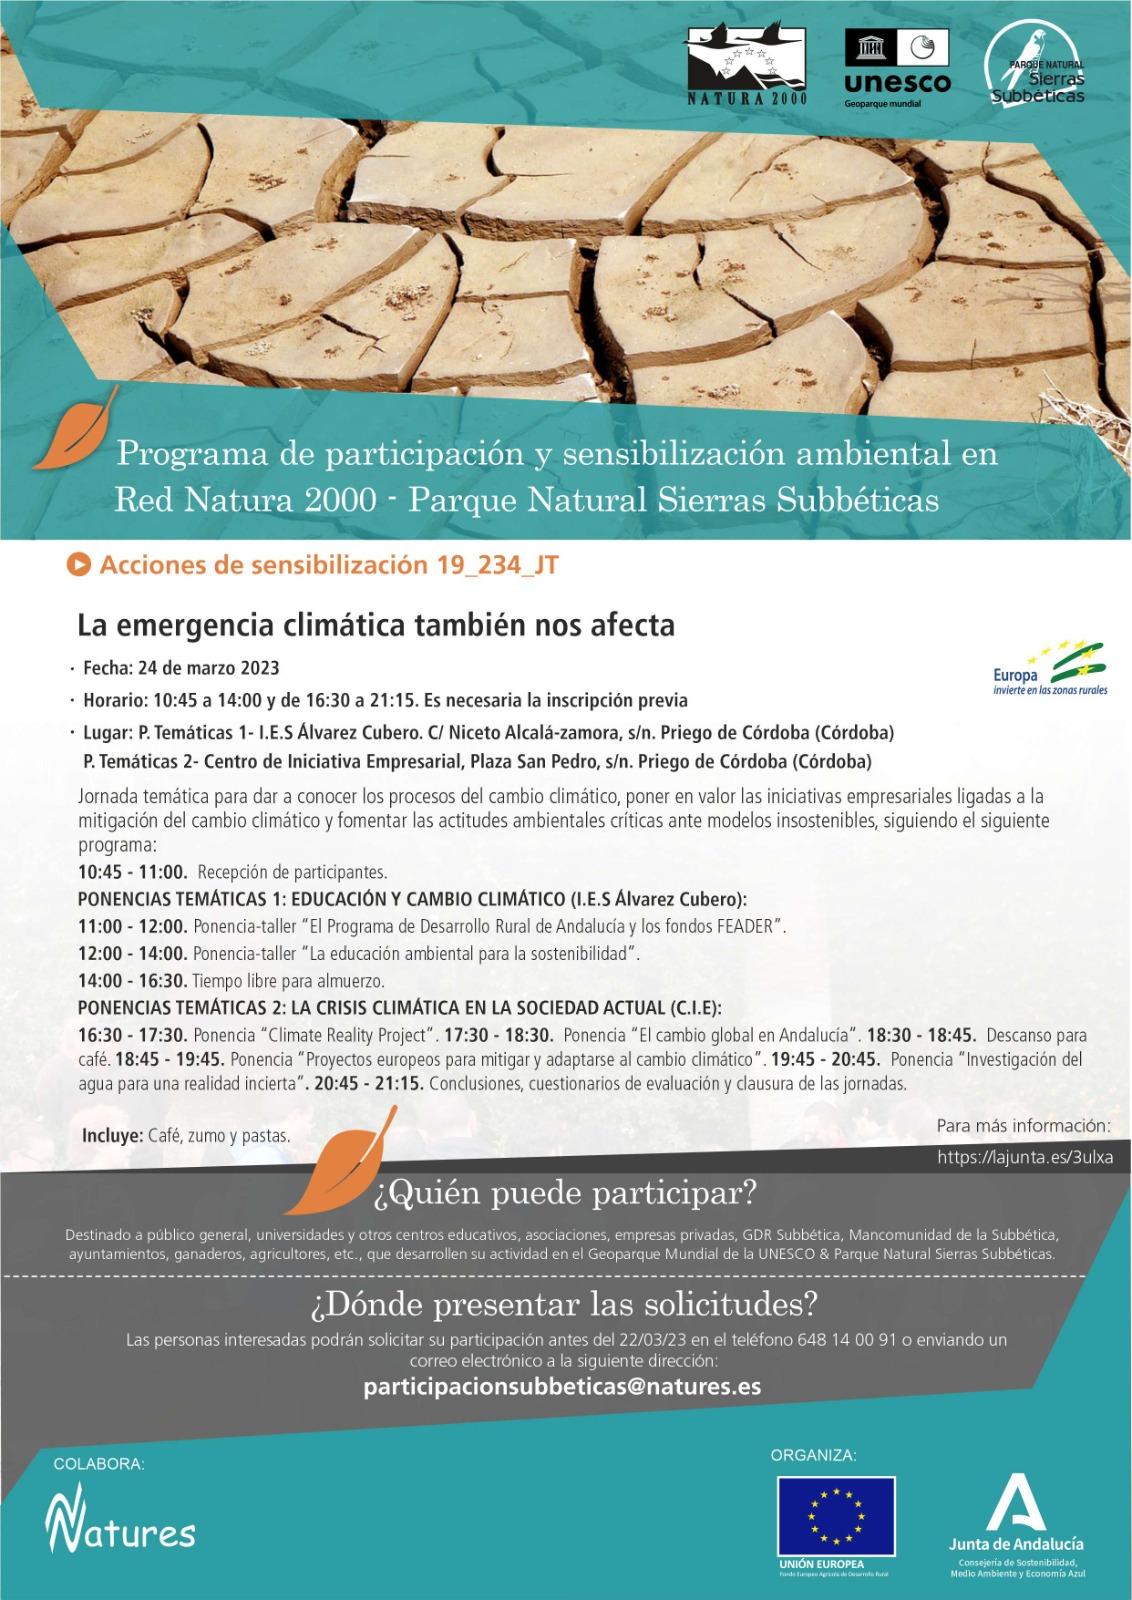 Programa de participación y sensibilización ambiental en la Red Natura 2000